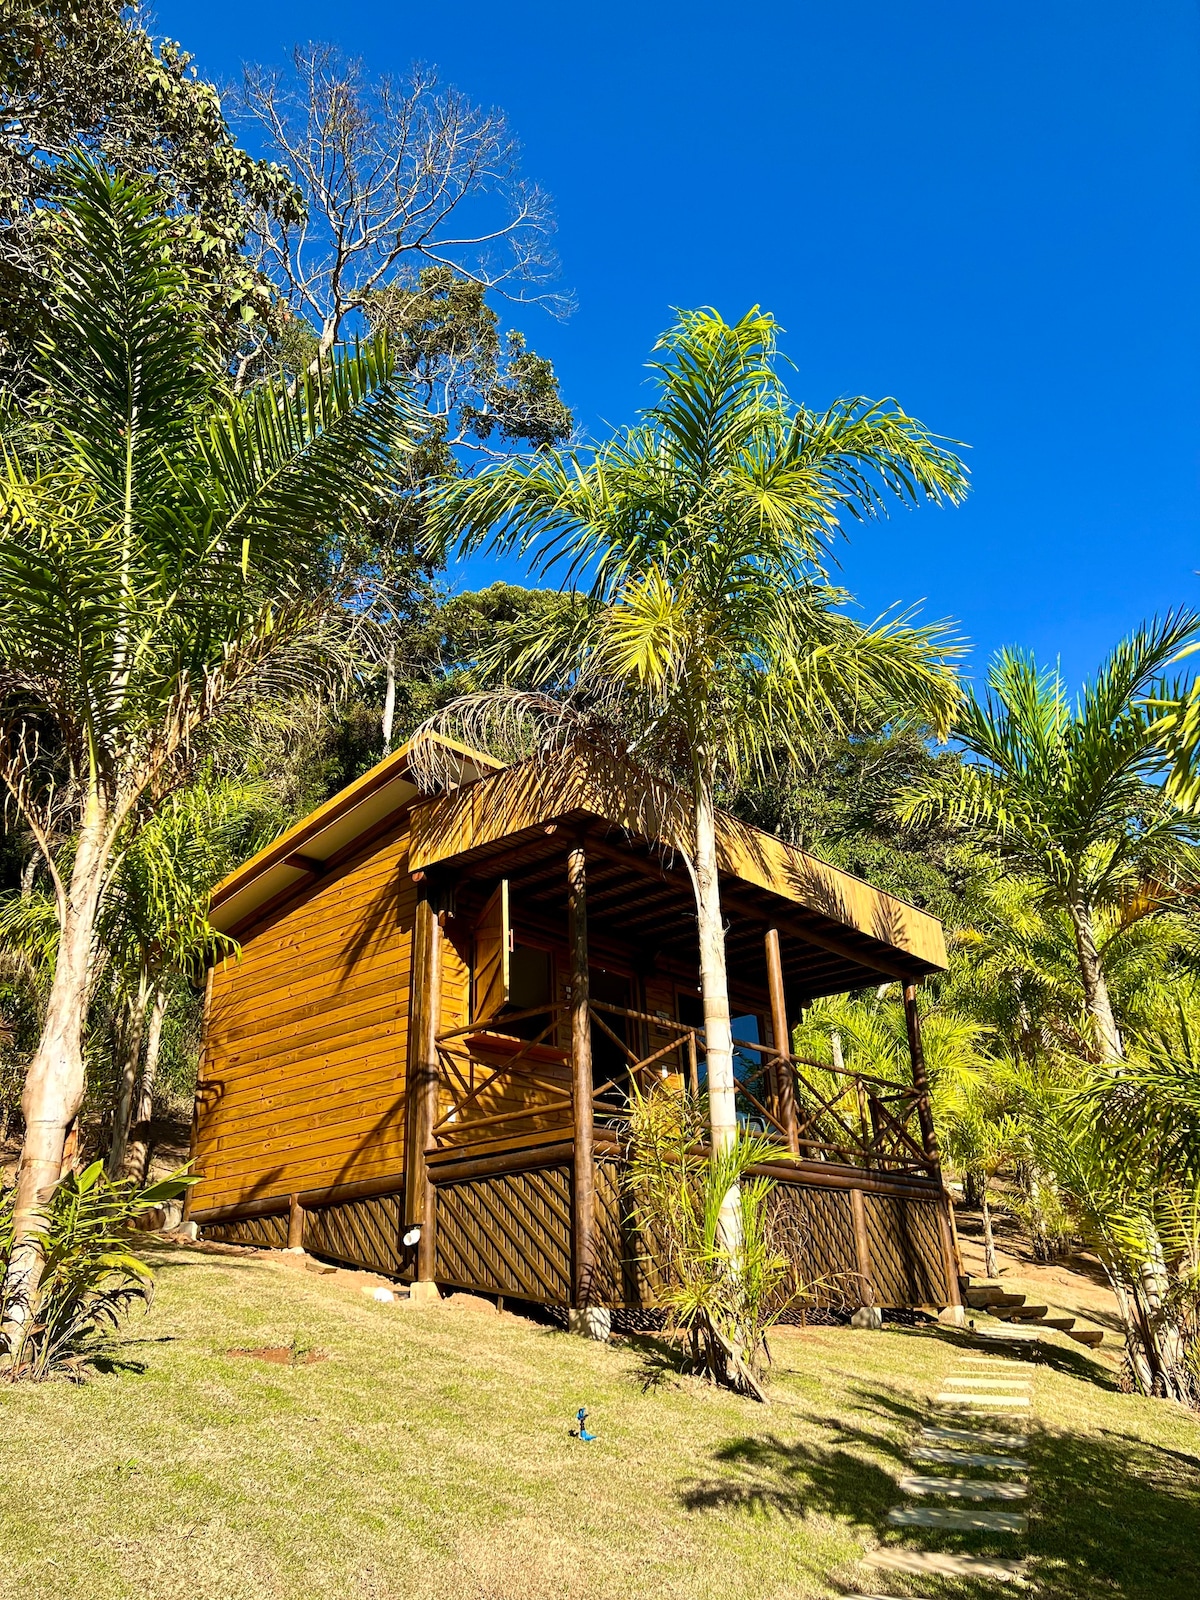 State of Espírito Santo Cabin Rentals - Brazil